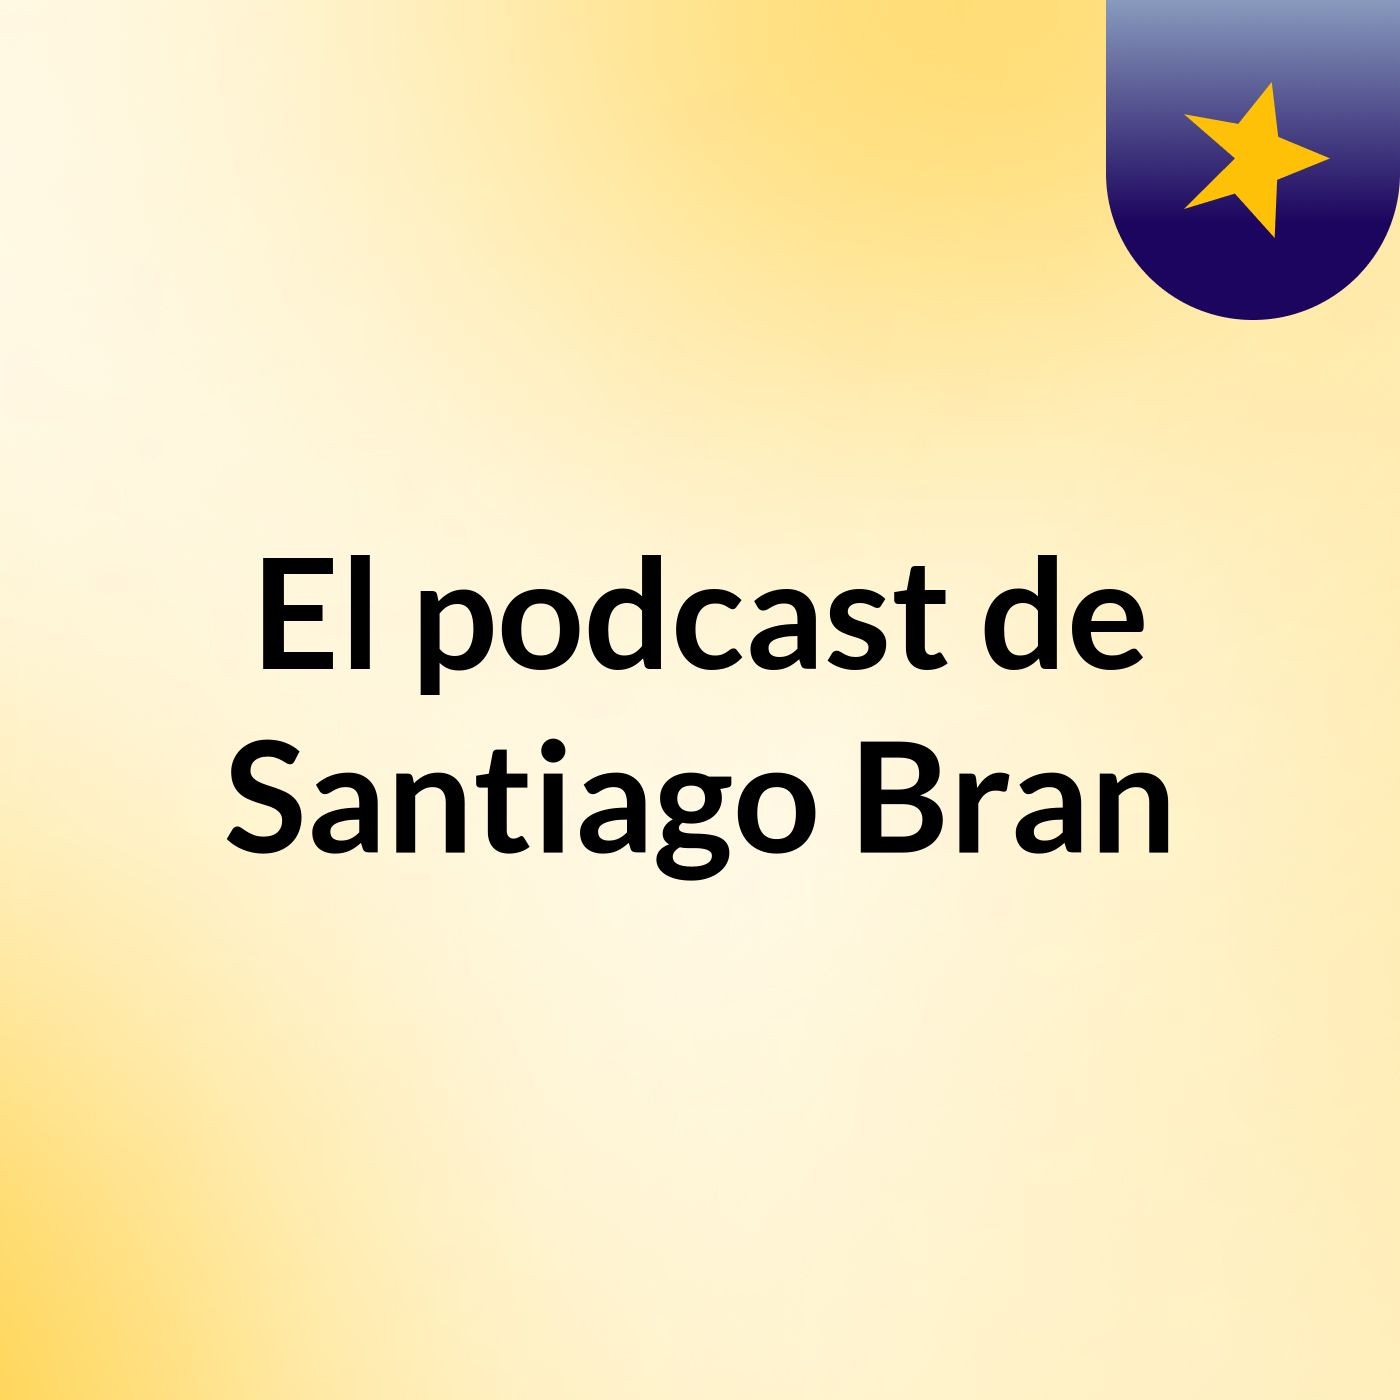 El podcast de Santiago Bran